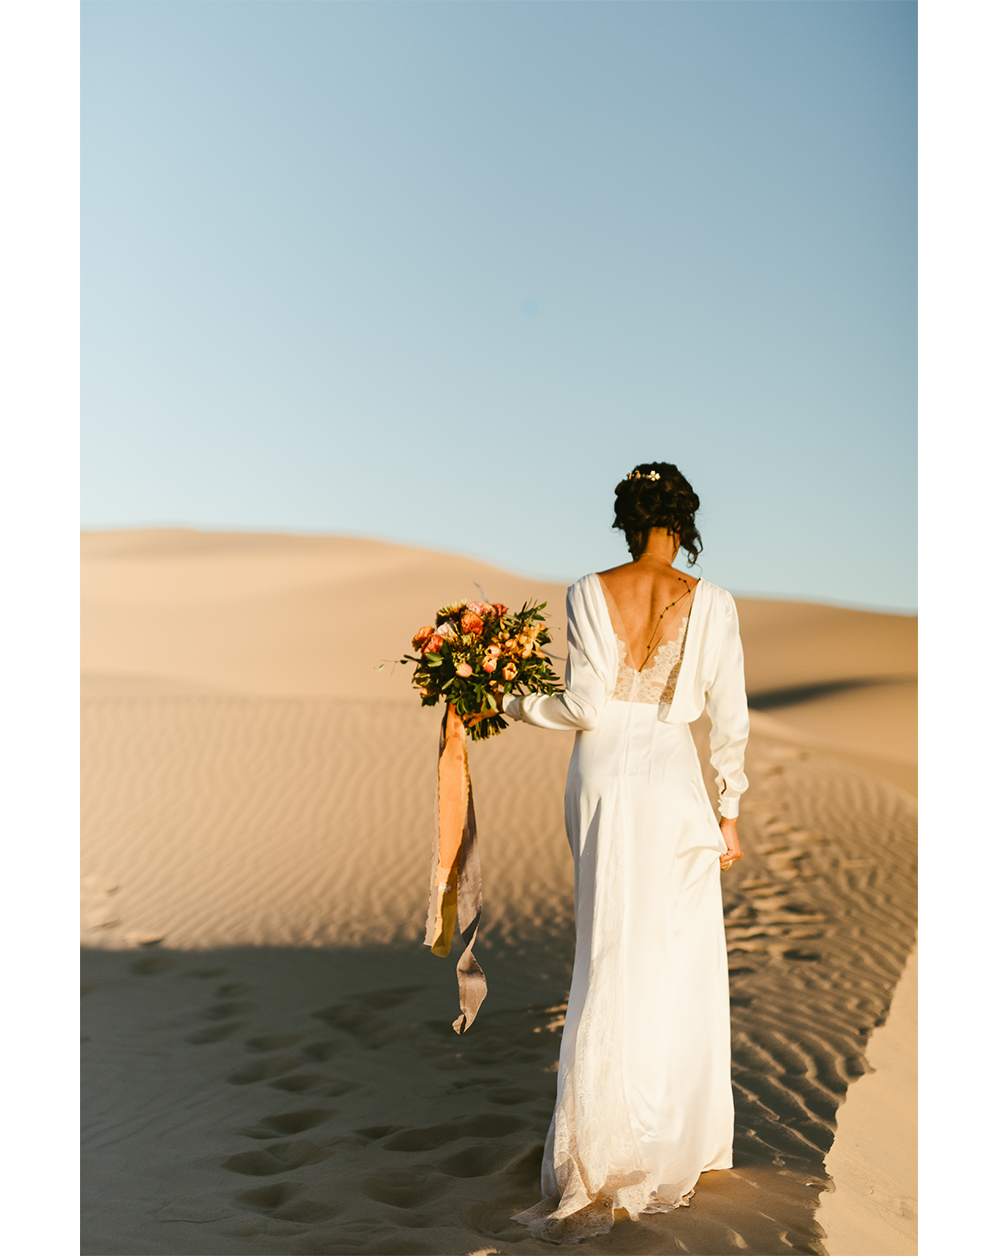 Frida enamorada boda en el desierto de baja california mexico 19.png